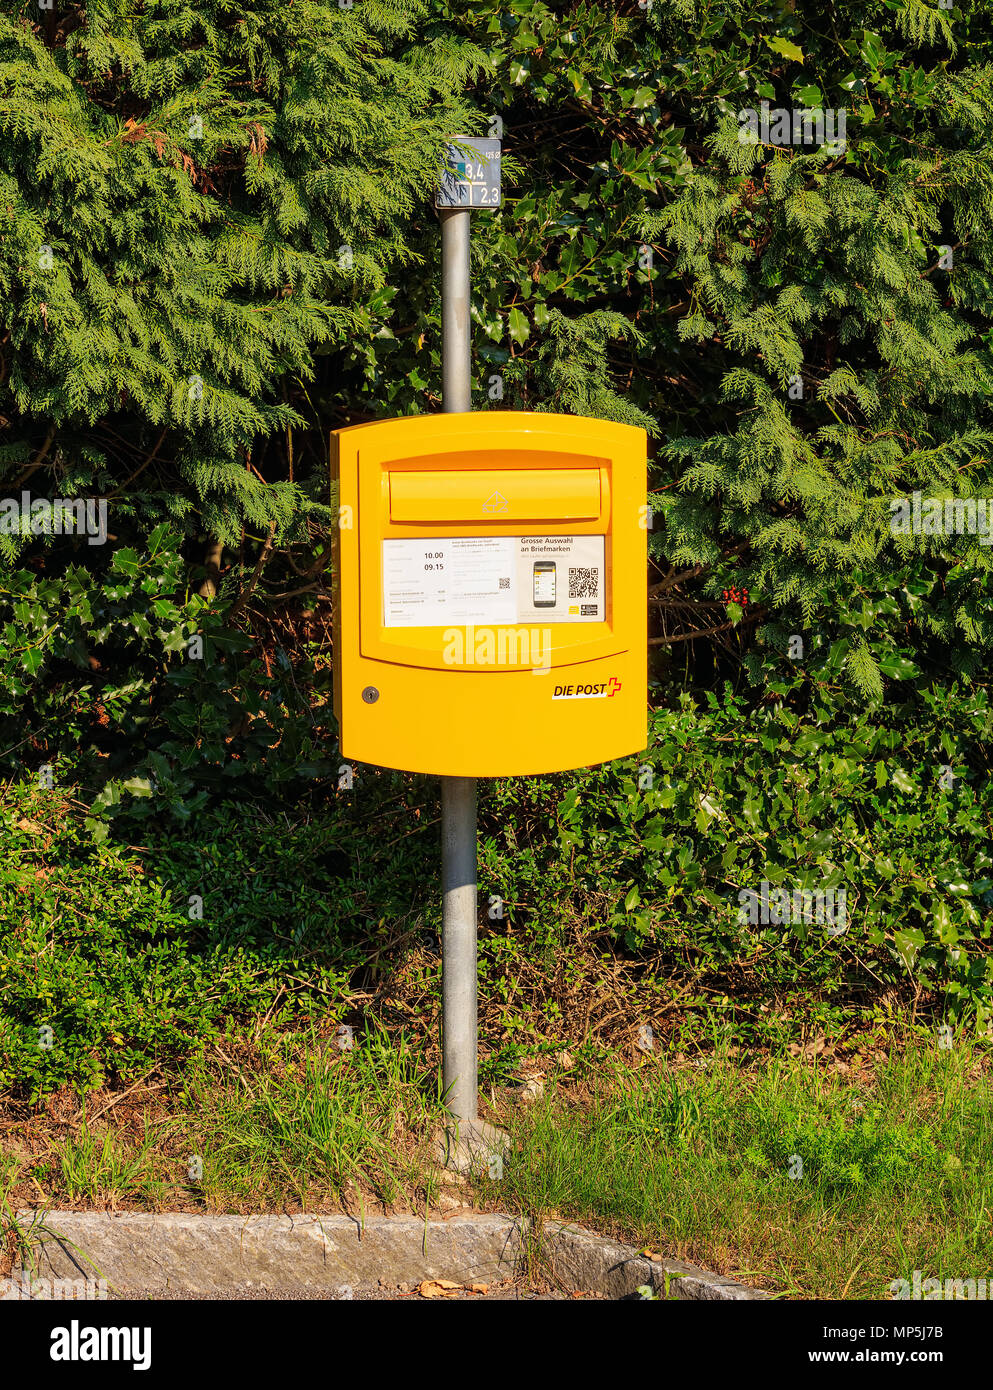 Ein Briefkasten der Post. Die Schweizerische Post ist die nationalen  Postdienst der Schweiz Stockfotografie - Alamy